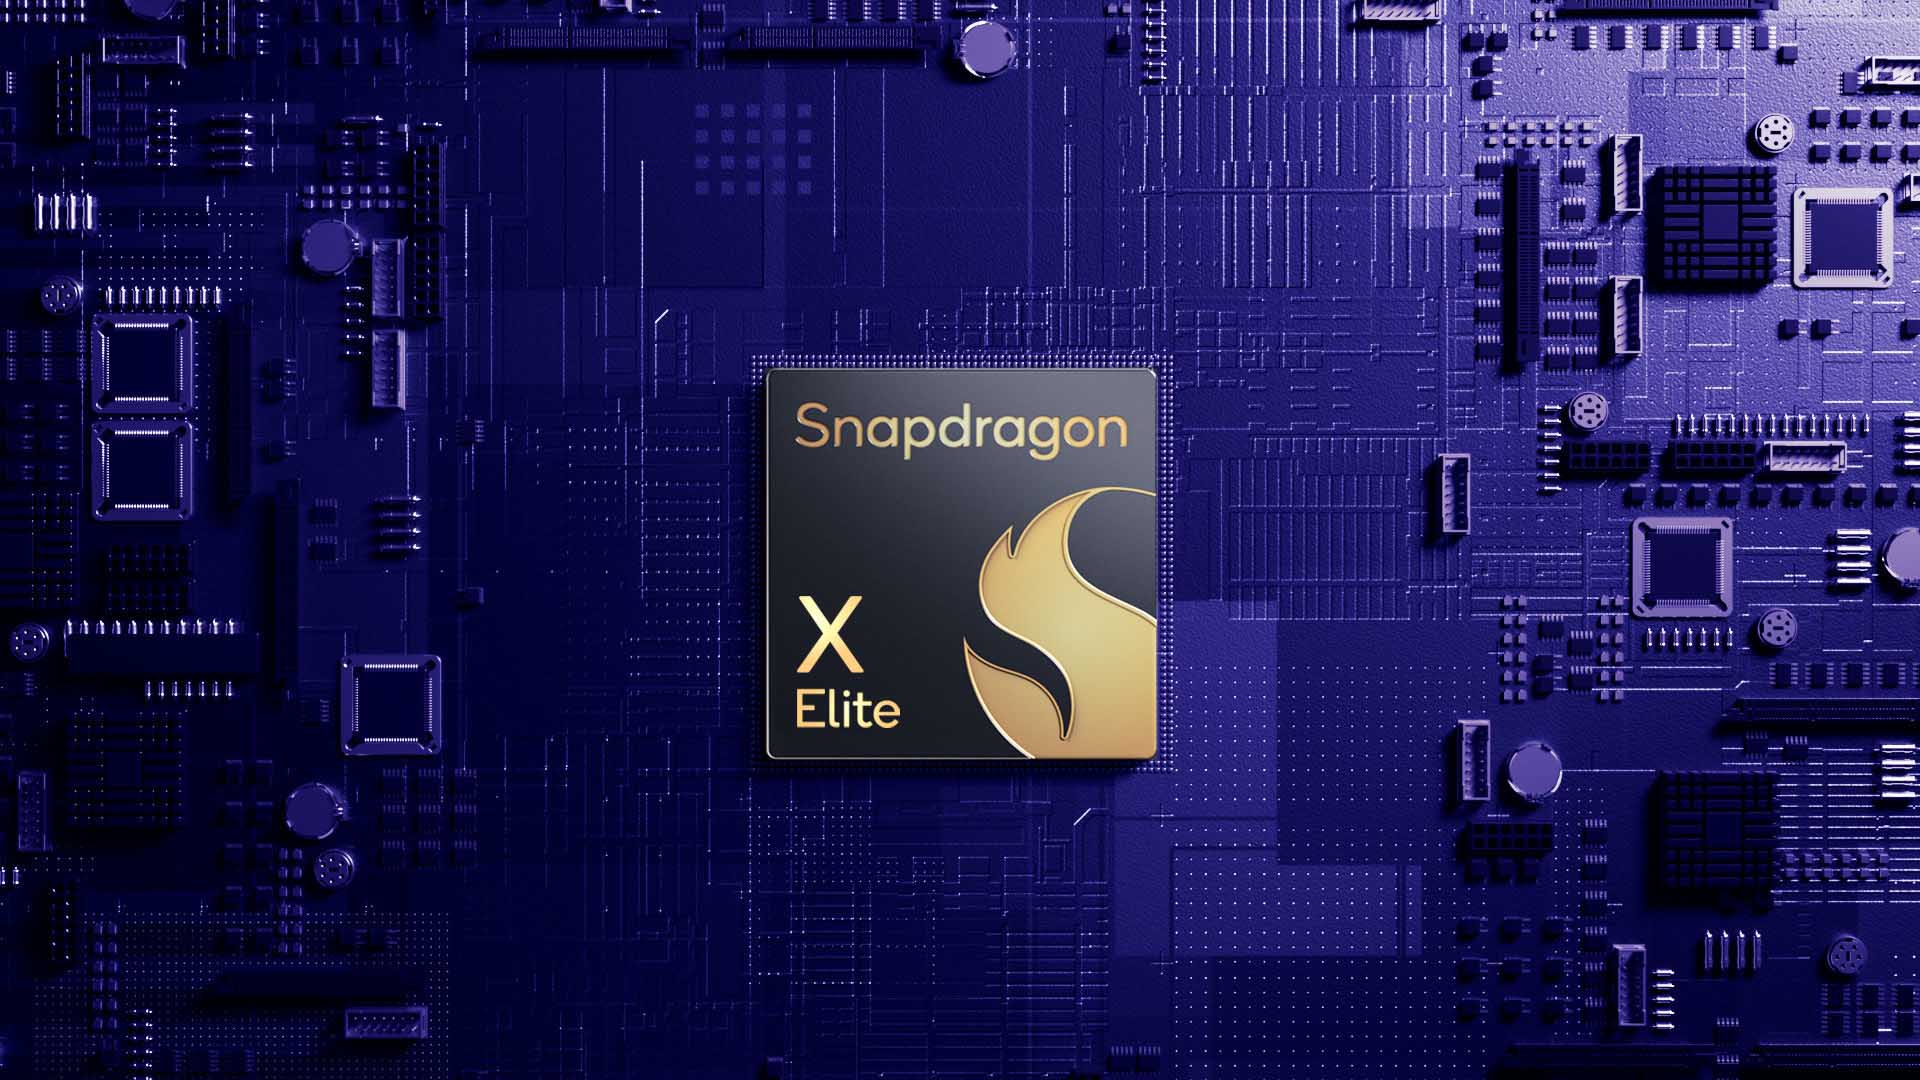 Snapdragon X Elite, İsimsiz Bir Lenovo Laptop Benchmark Testinde %49'luk Artış Yakaladı